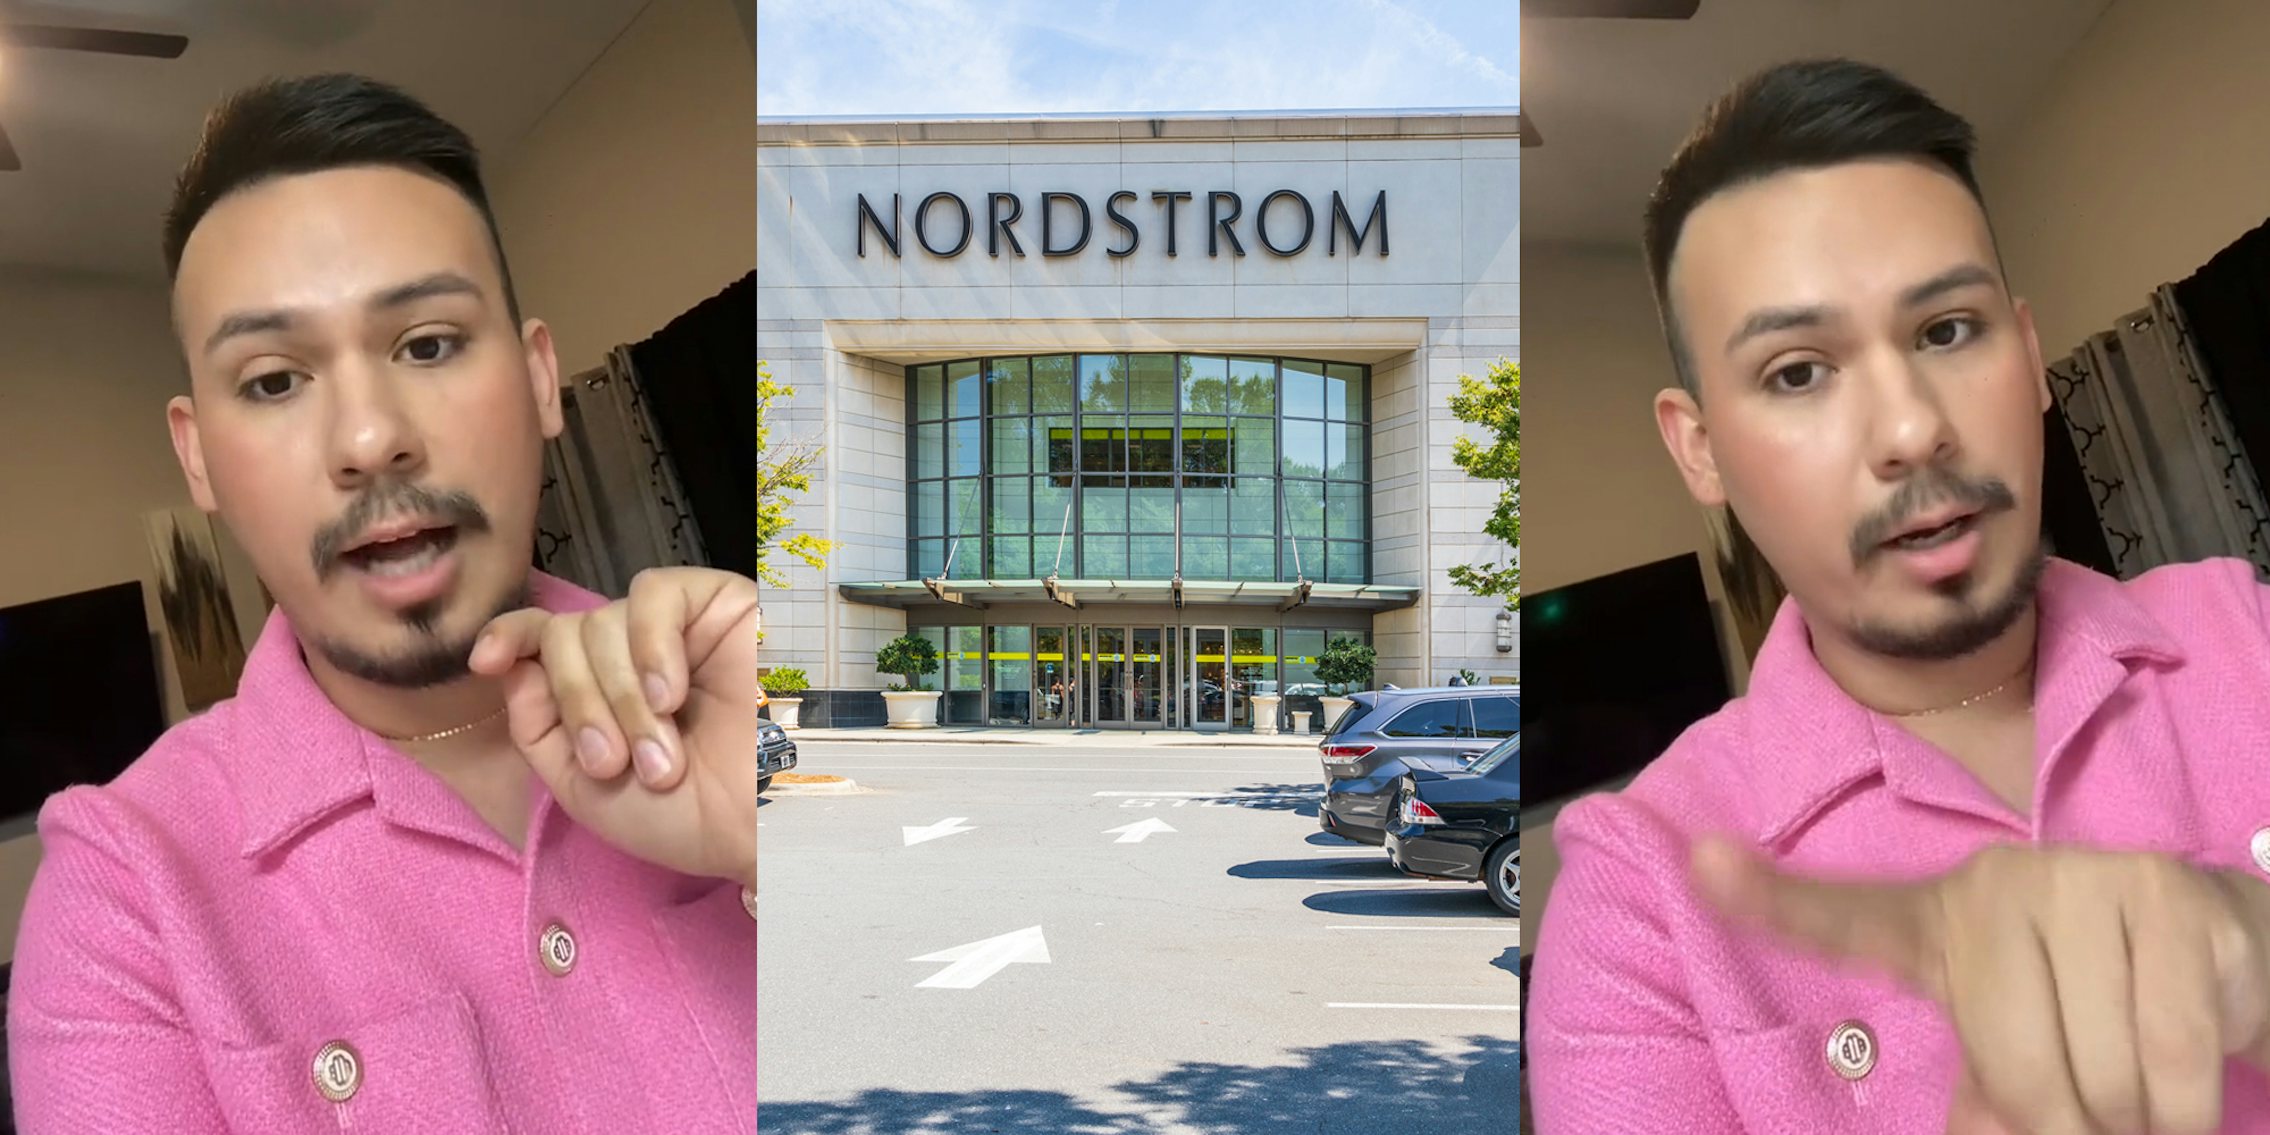 Nordstrom worker speaking (l) Nordstrom building with sign (c) Nordstrom worker speaking pointing left (r)